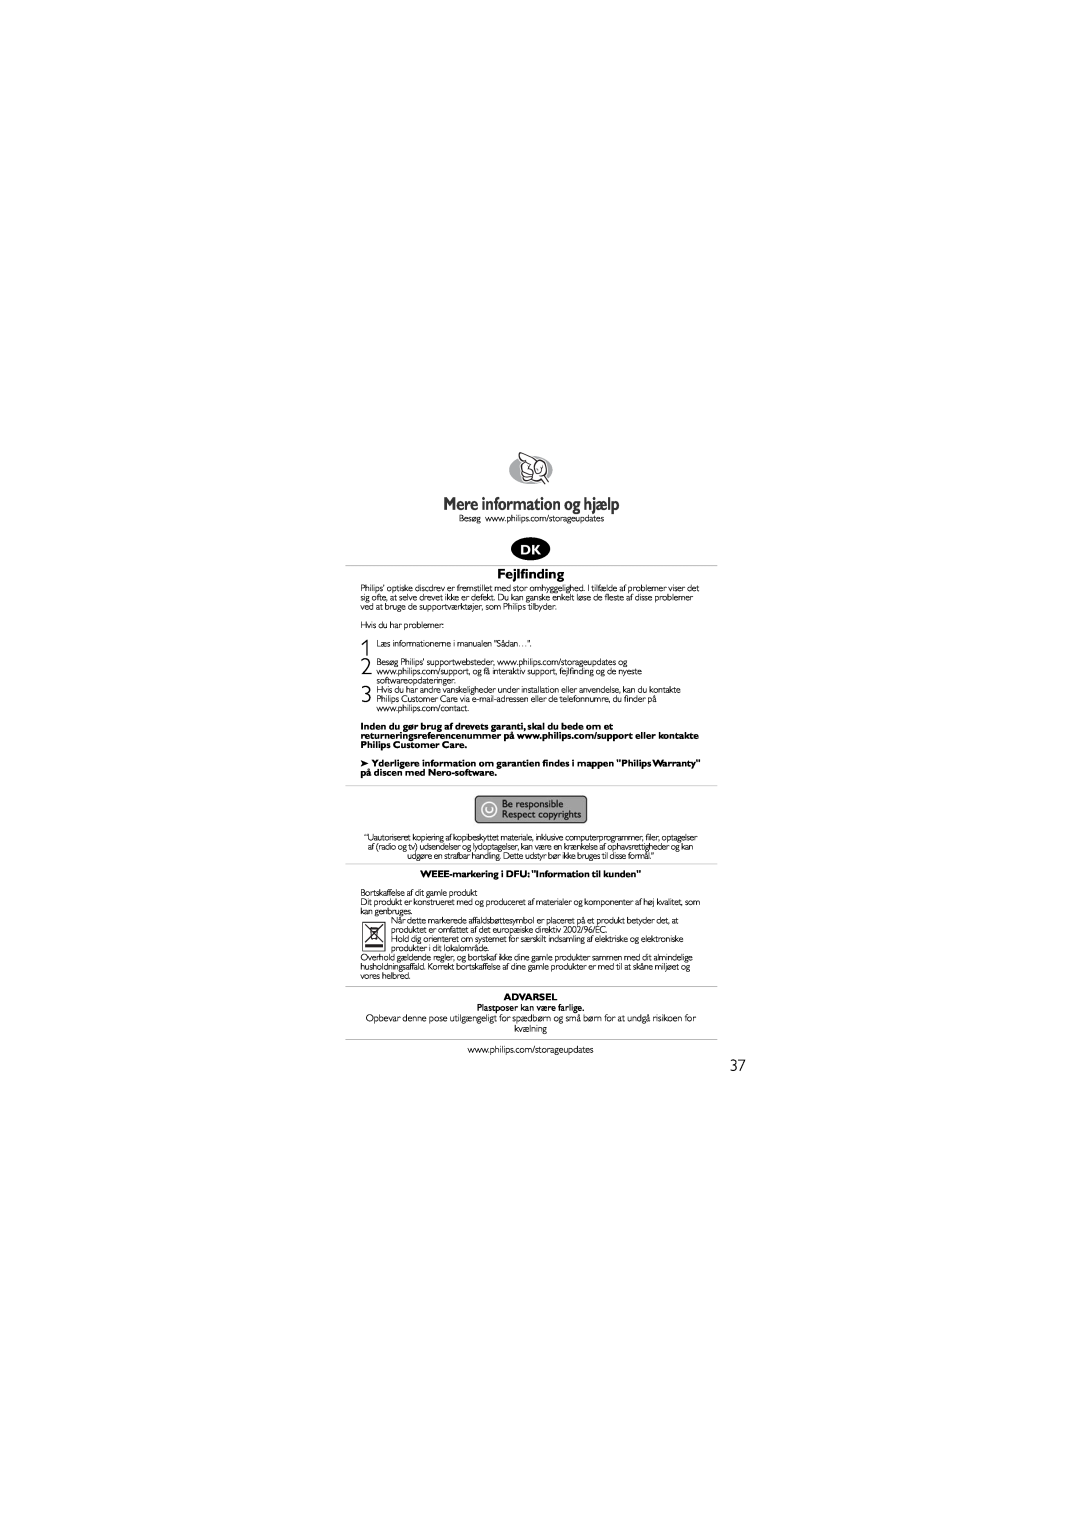 Philips SJ/T11363 manual Mere information og hjælp, Fejlﬁnding, WEEE-markeringi DFU Information til kunden, Advarsel 